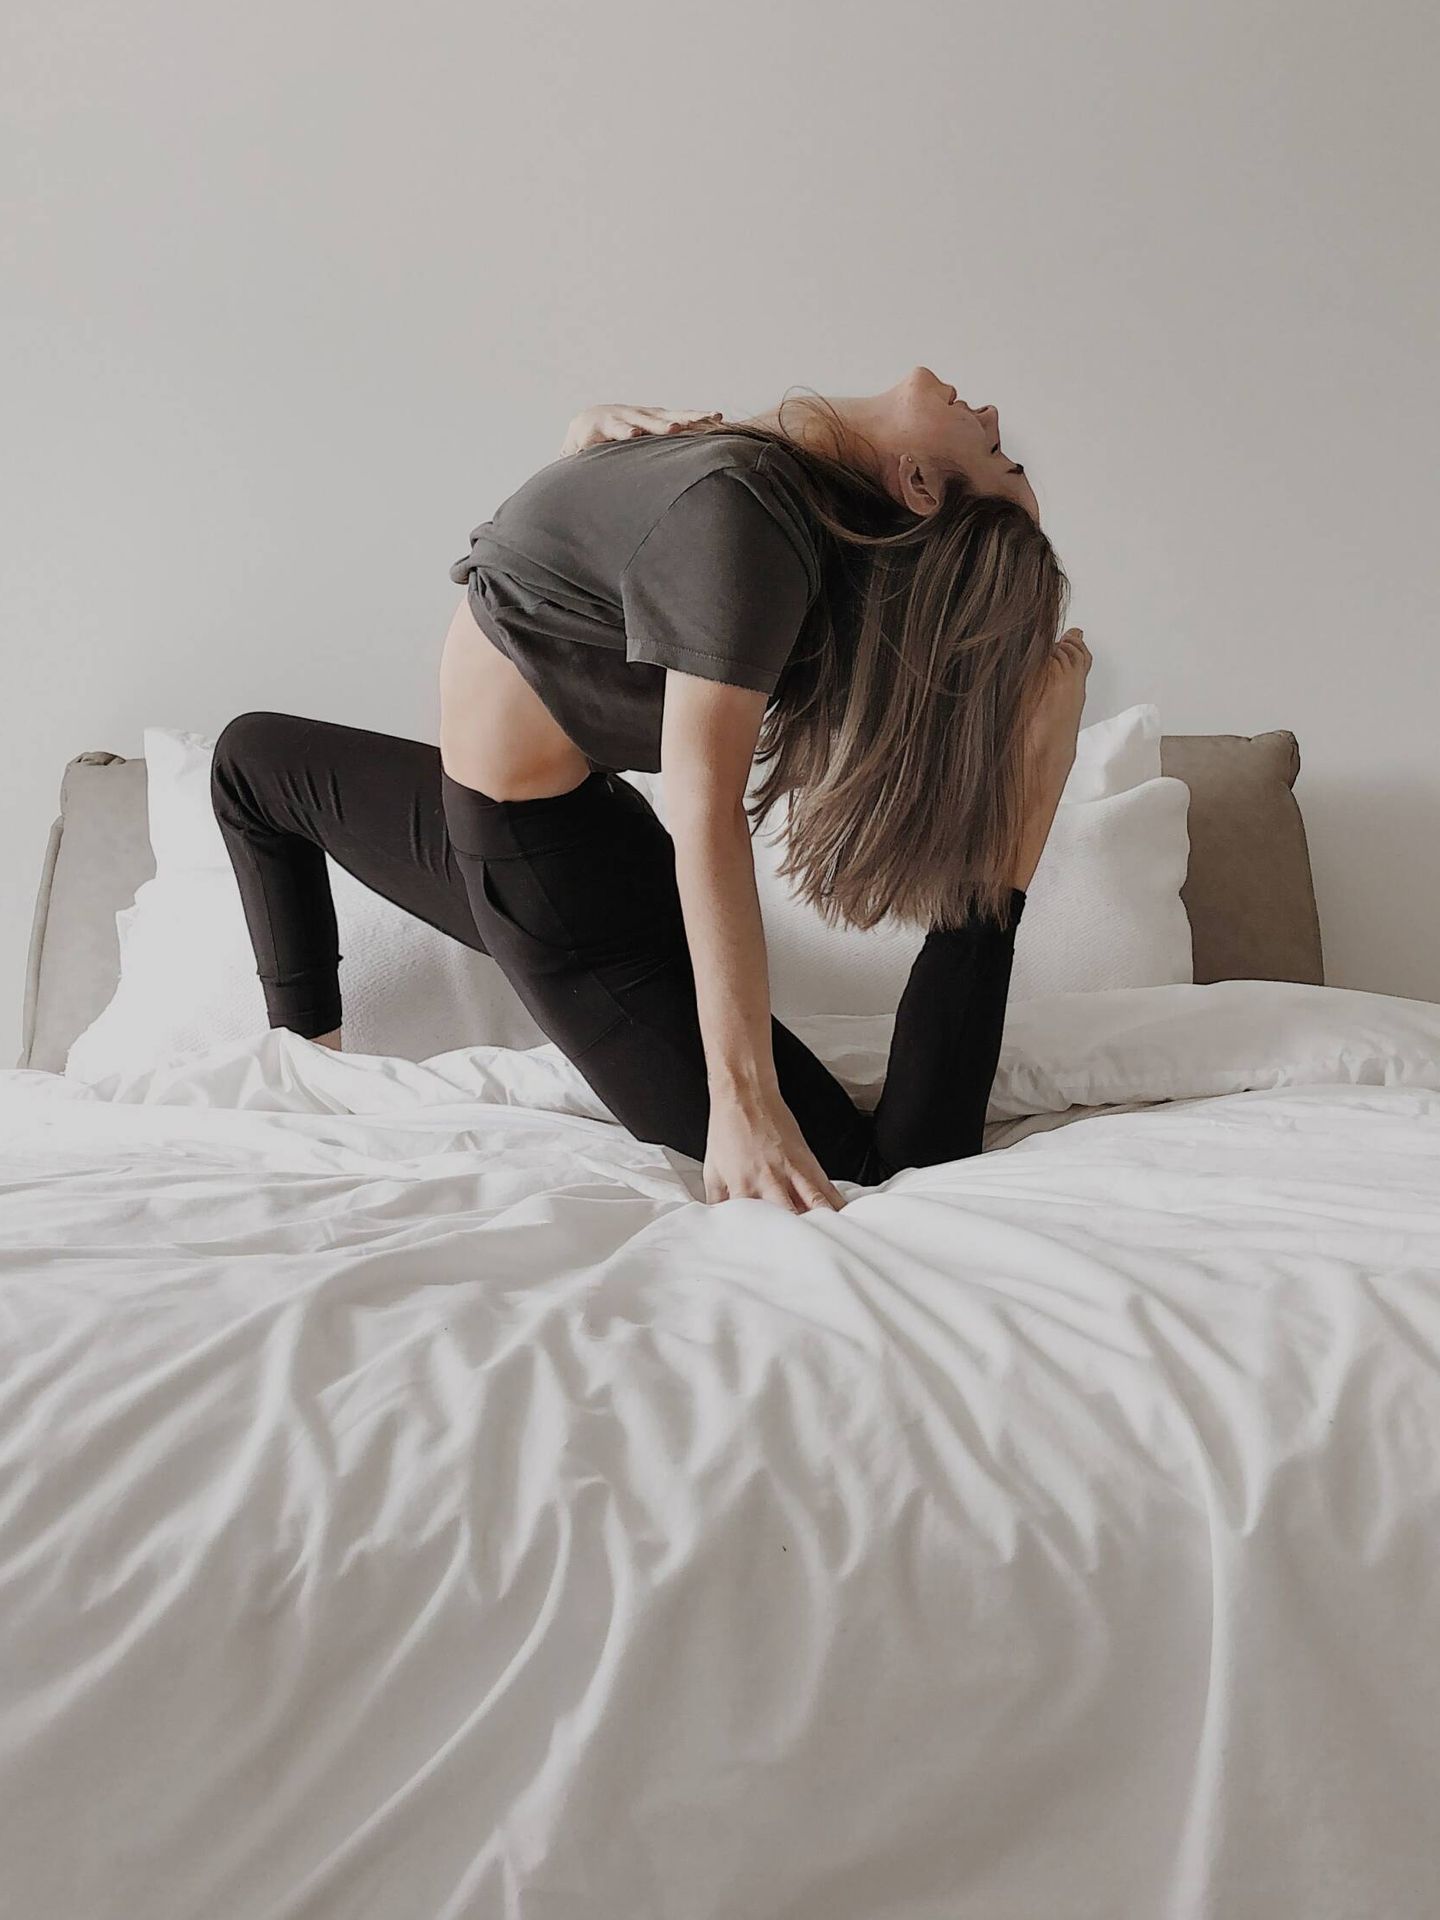 Posturas de yoga que puedes hacer sin salir de la cama. (Mathilde Langevin para Unsplash)